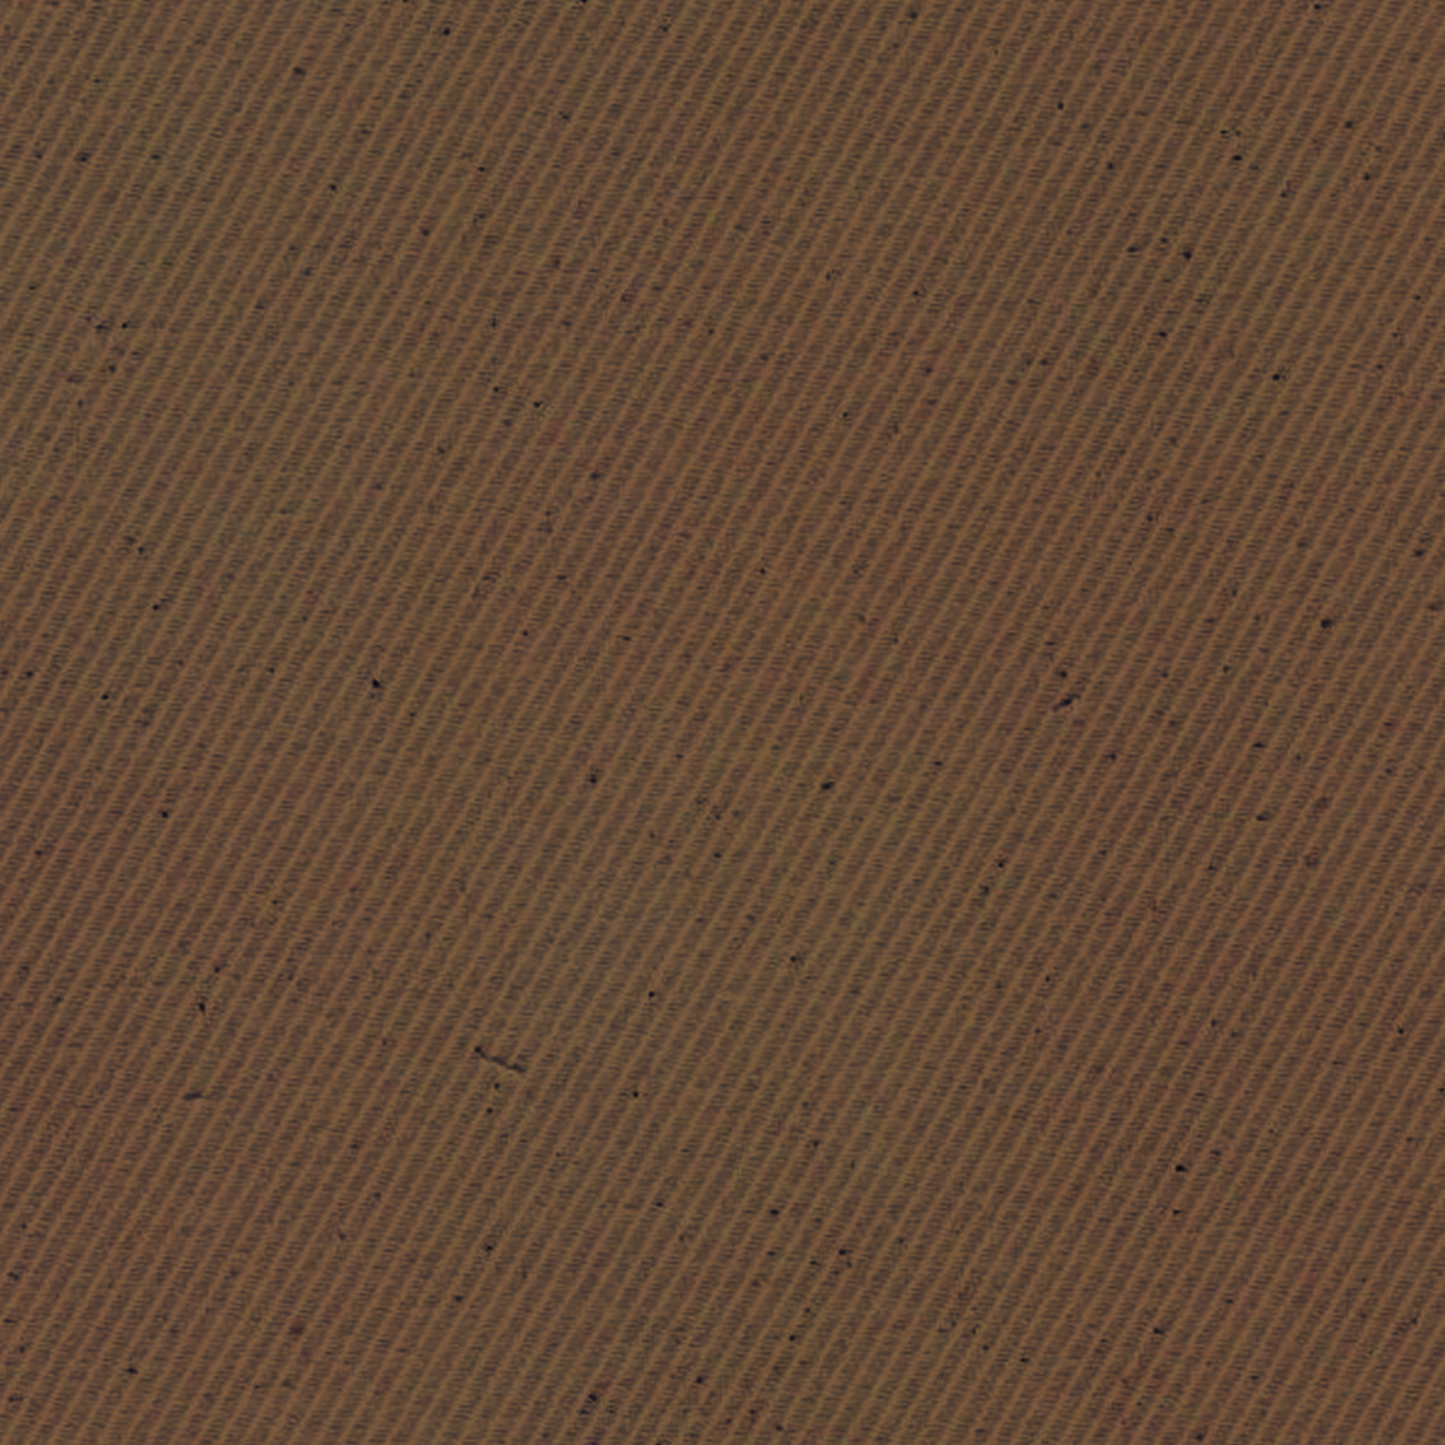 Brown Twill - XL Tote - Single Sided Screenprint